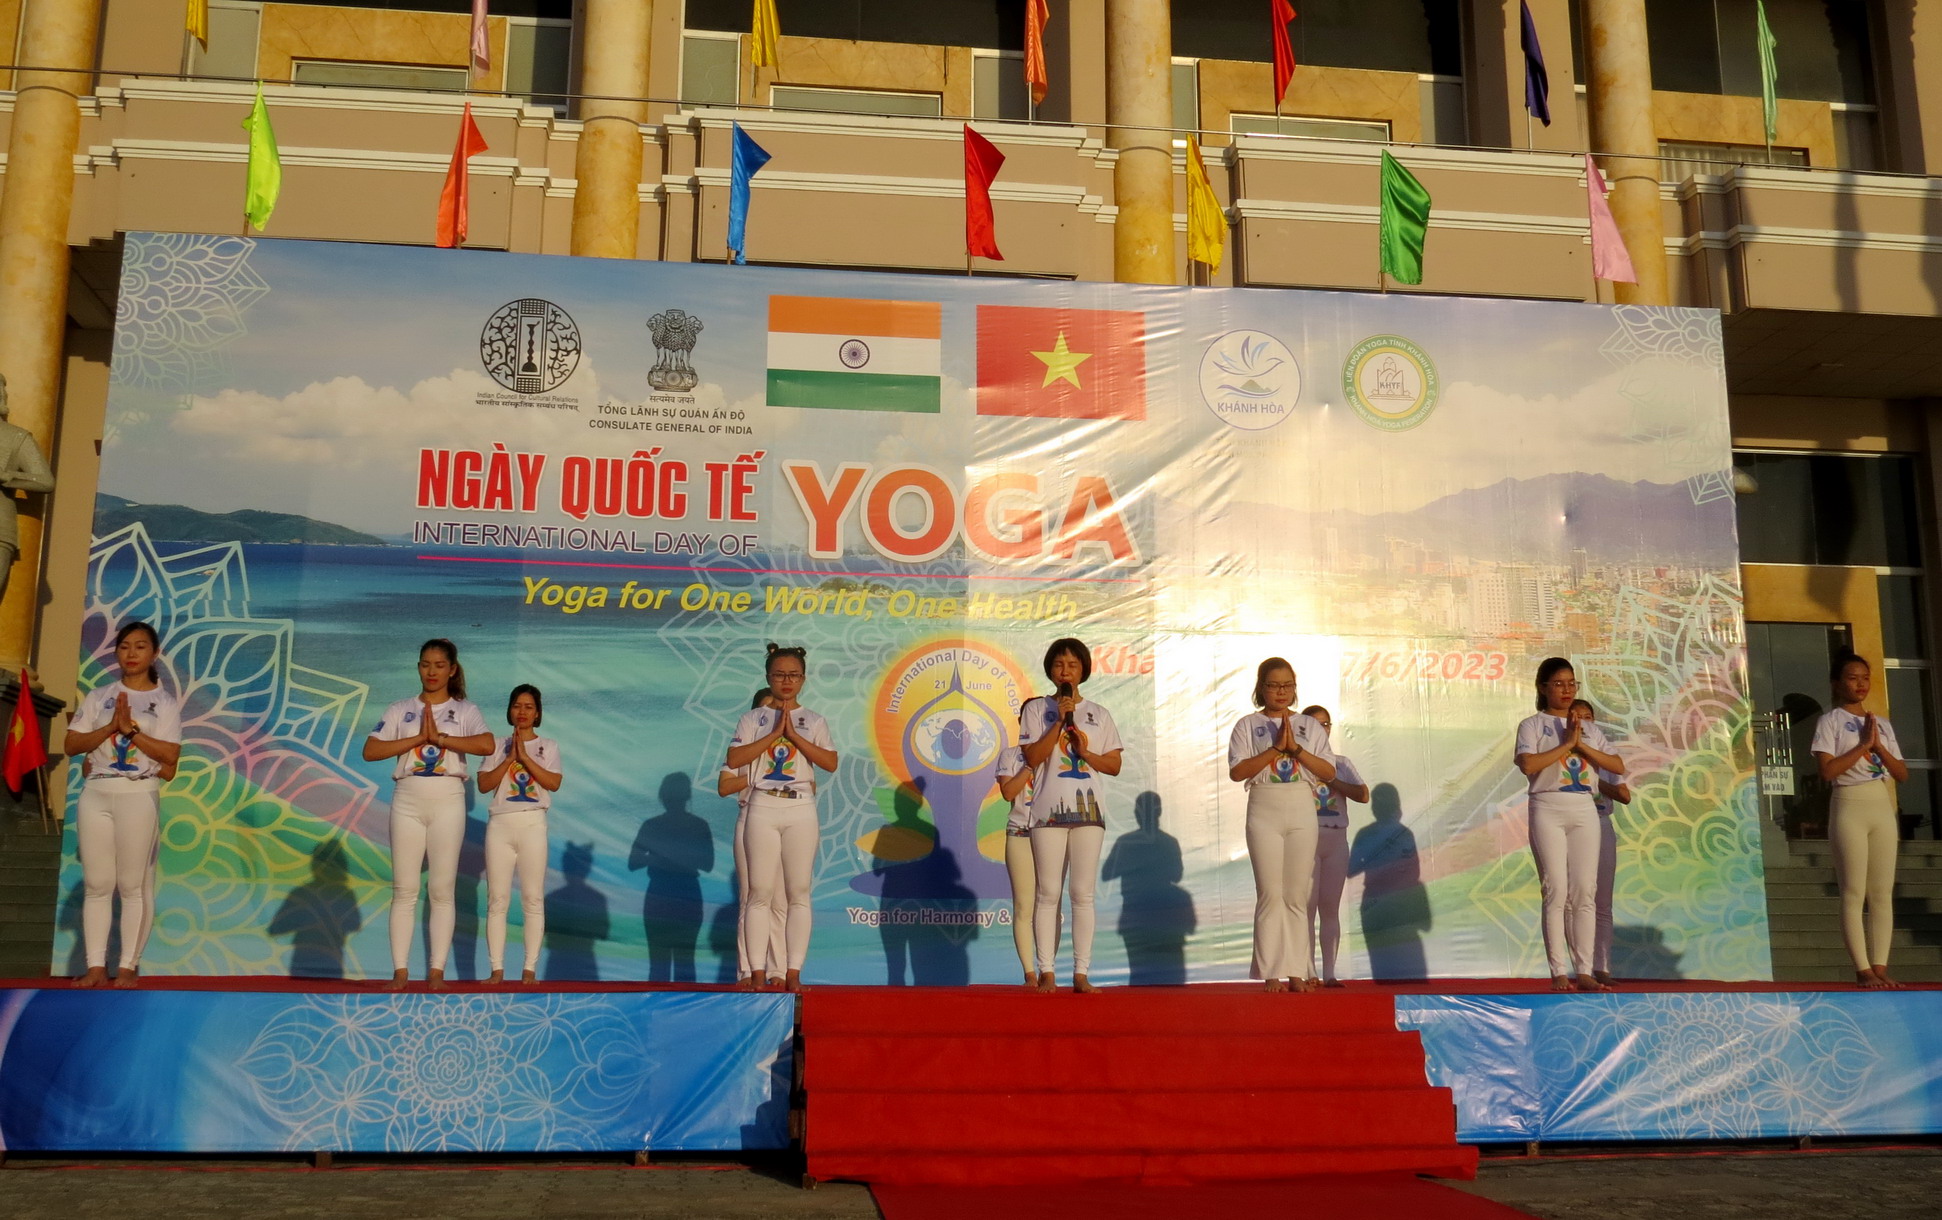 Buổi đồng diễn được thực hiện dưới sự hướng dẫn trực tiếp từ chuyên gia Trần Thị Thanh Trang - Giáo đốc Trung tâm Đào tạo huấn Yoga tỉnh Khánh Hòa